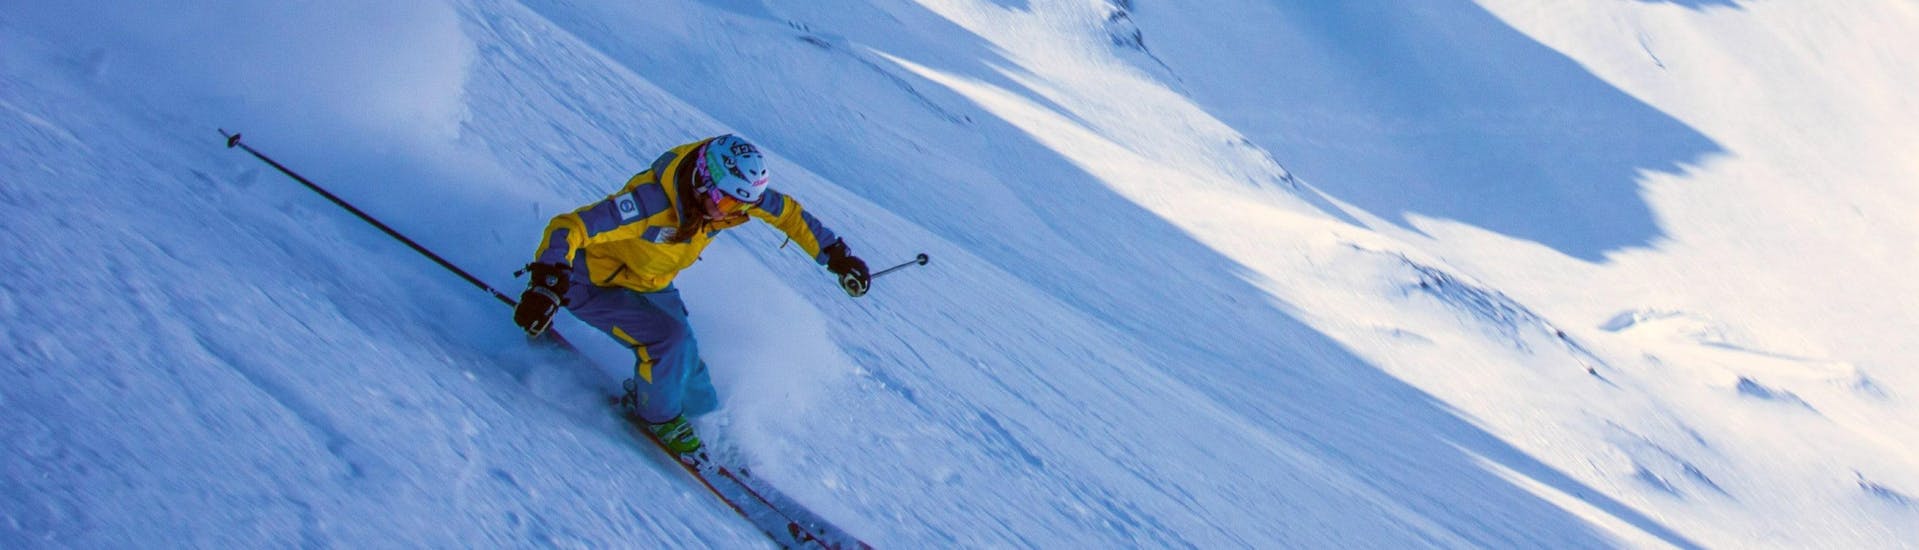 adult-ski-lessons-villars-ski-school-hero